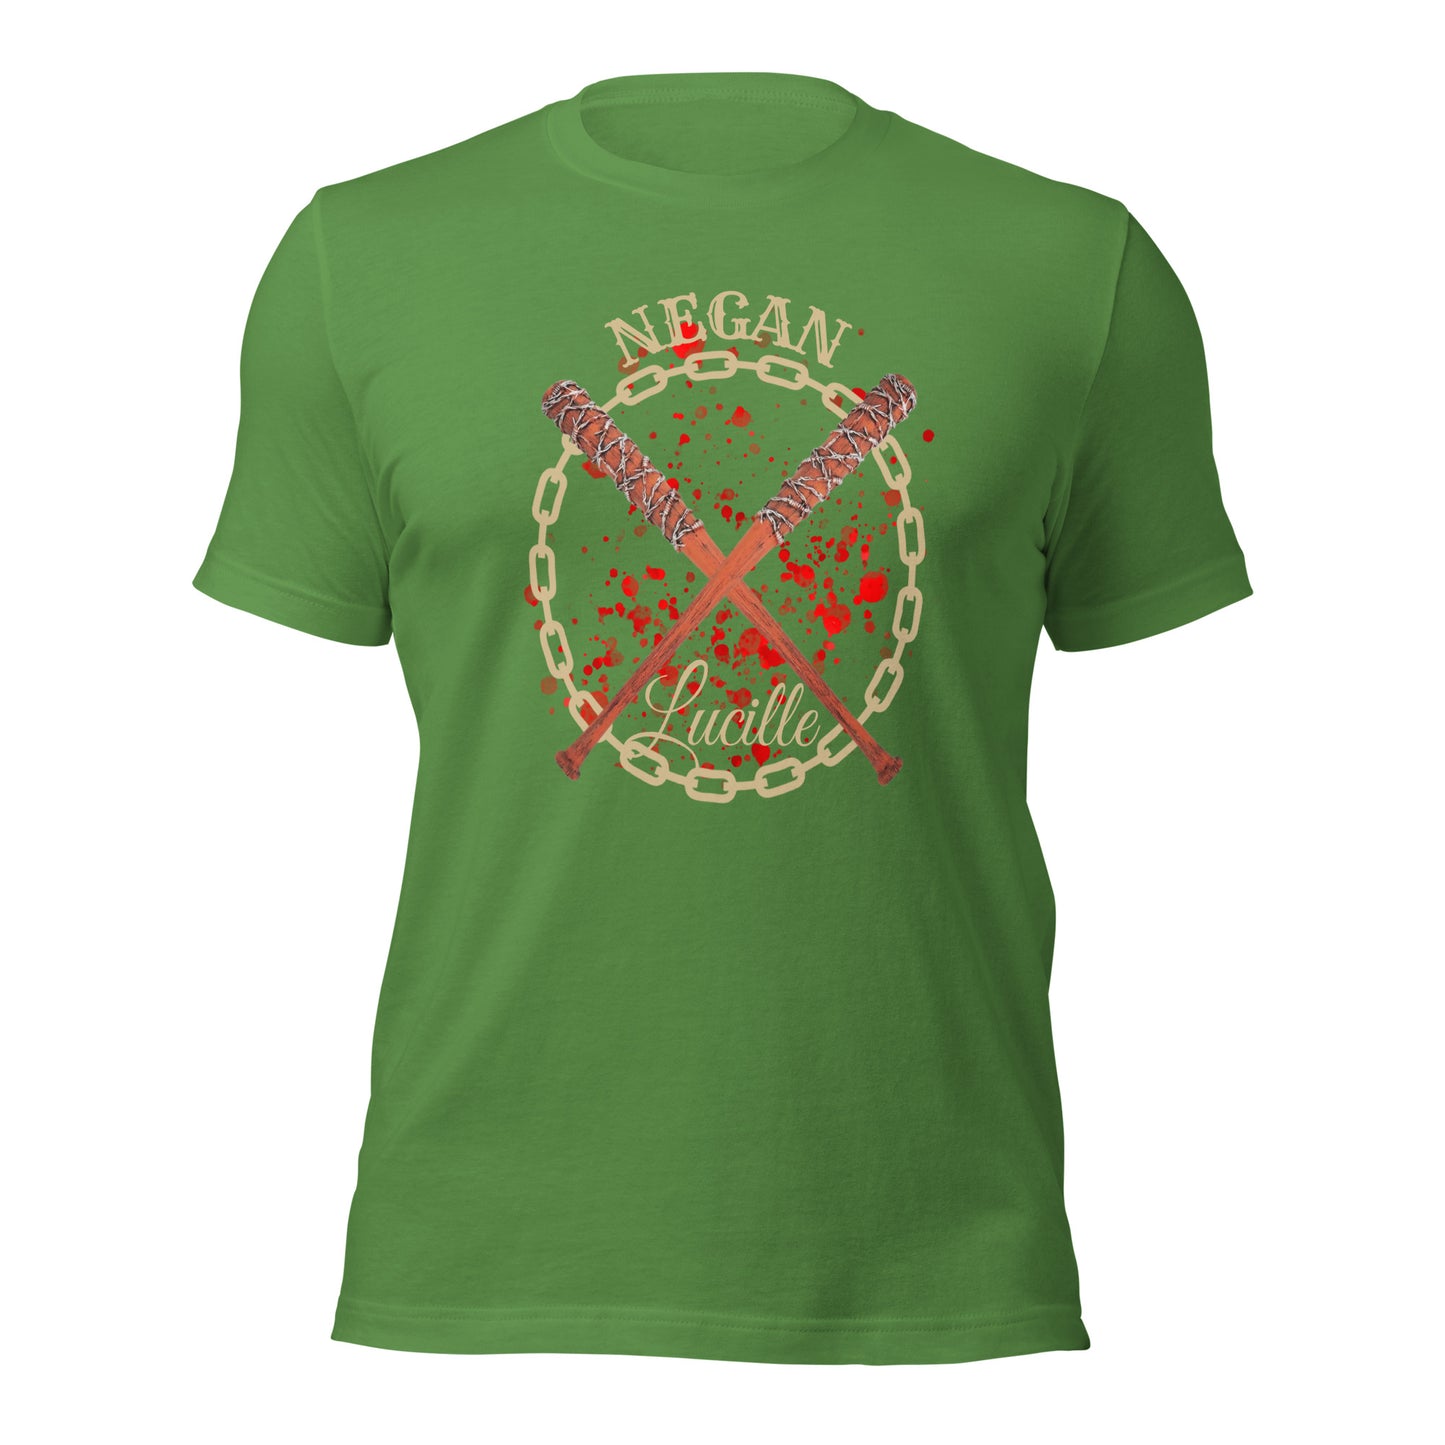 Negan Lucille T-shirt: Unique Baseball Style